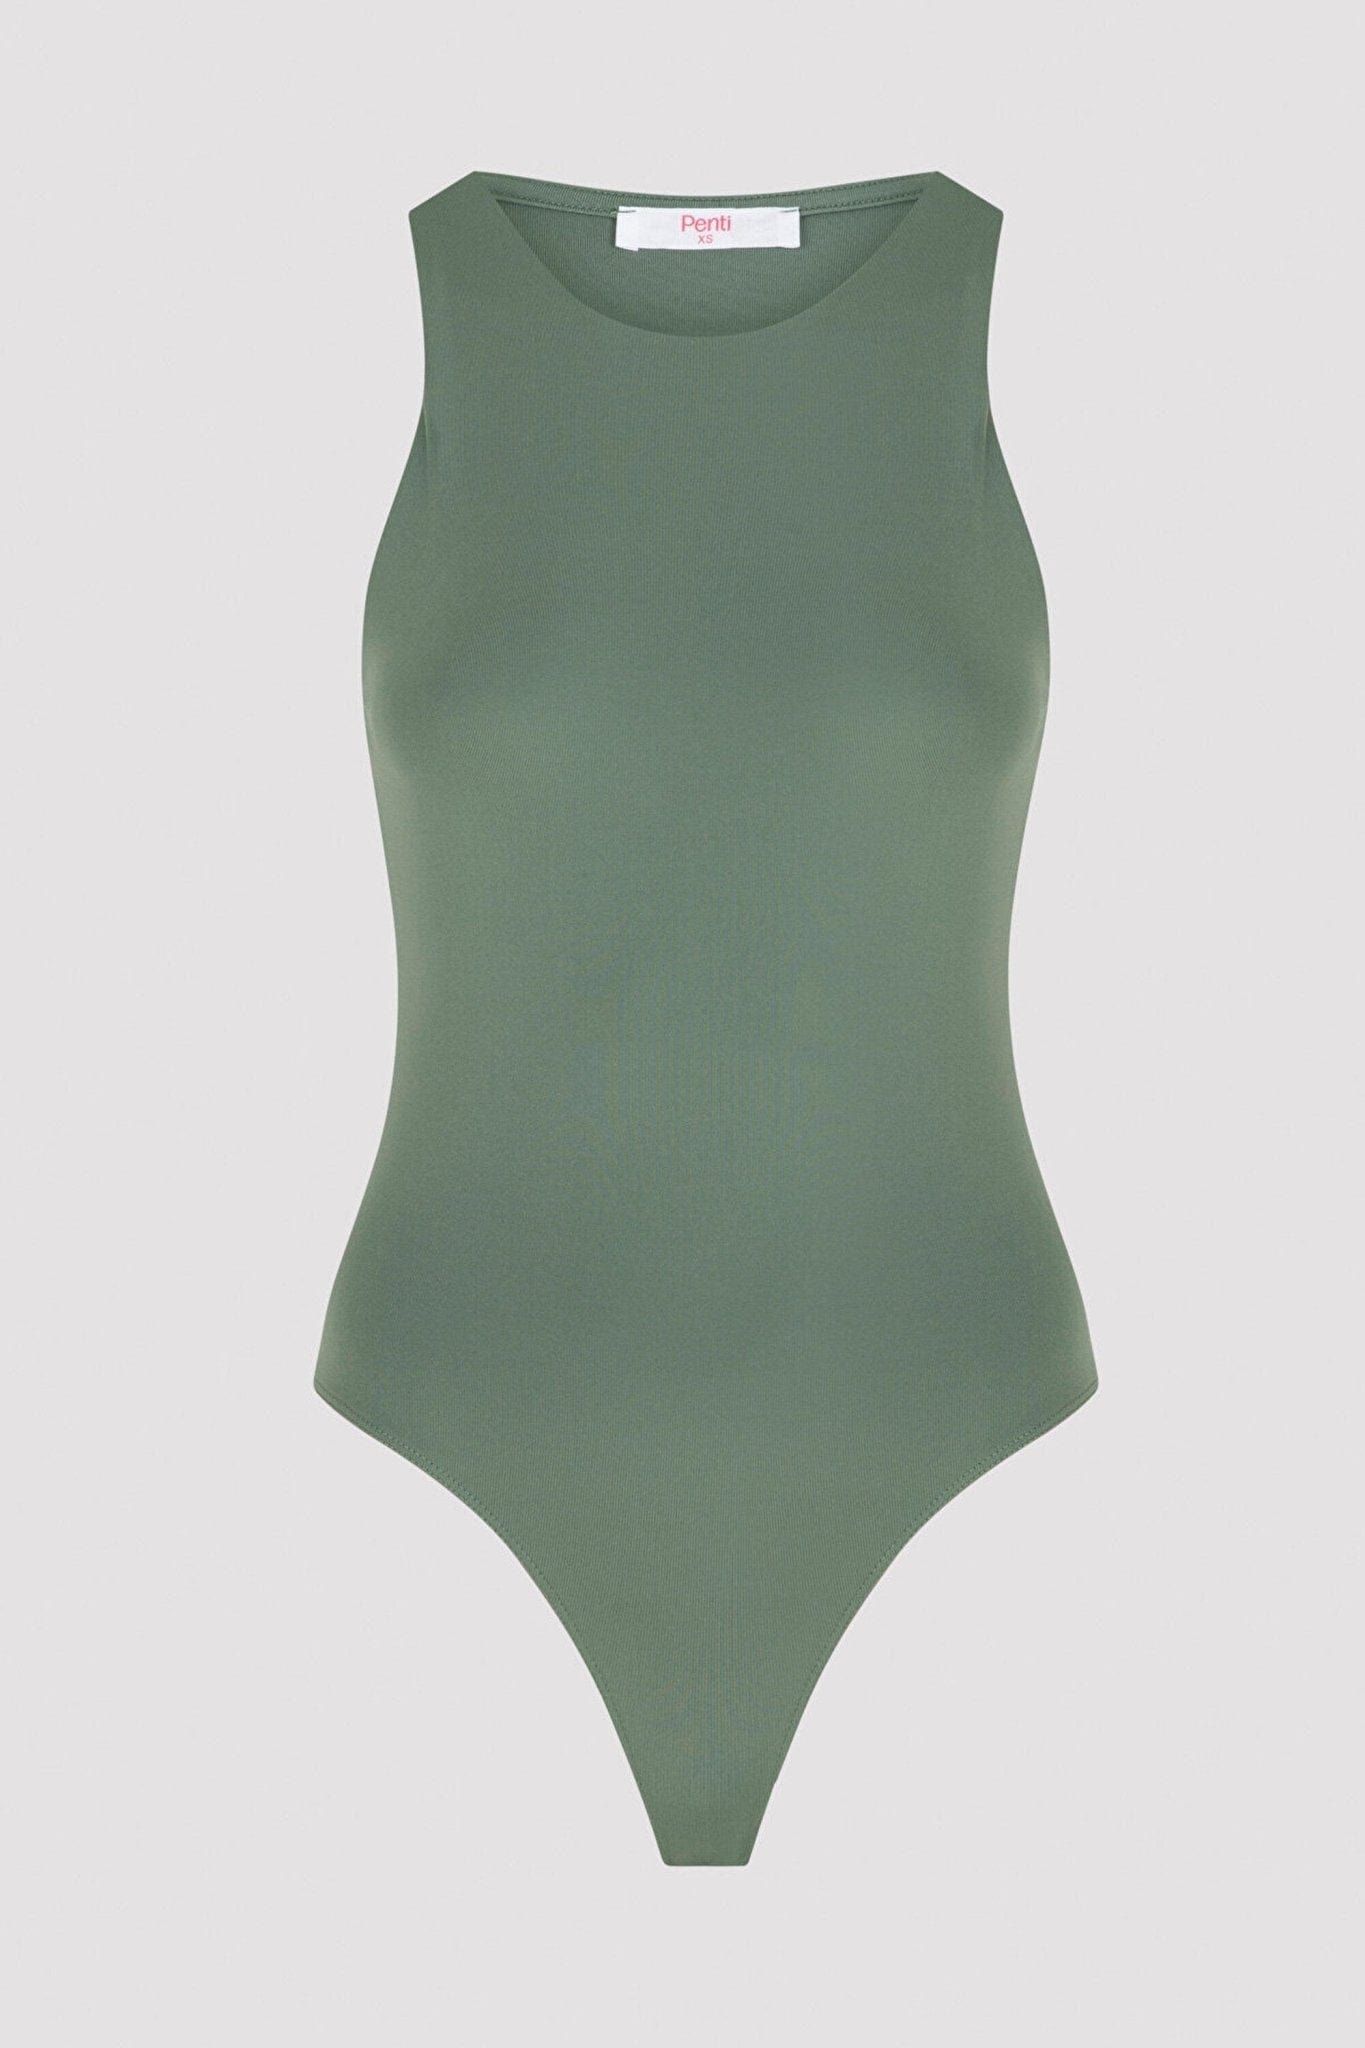 Green High Neck Bodysuit XS / 2 FLEXISB